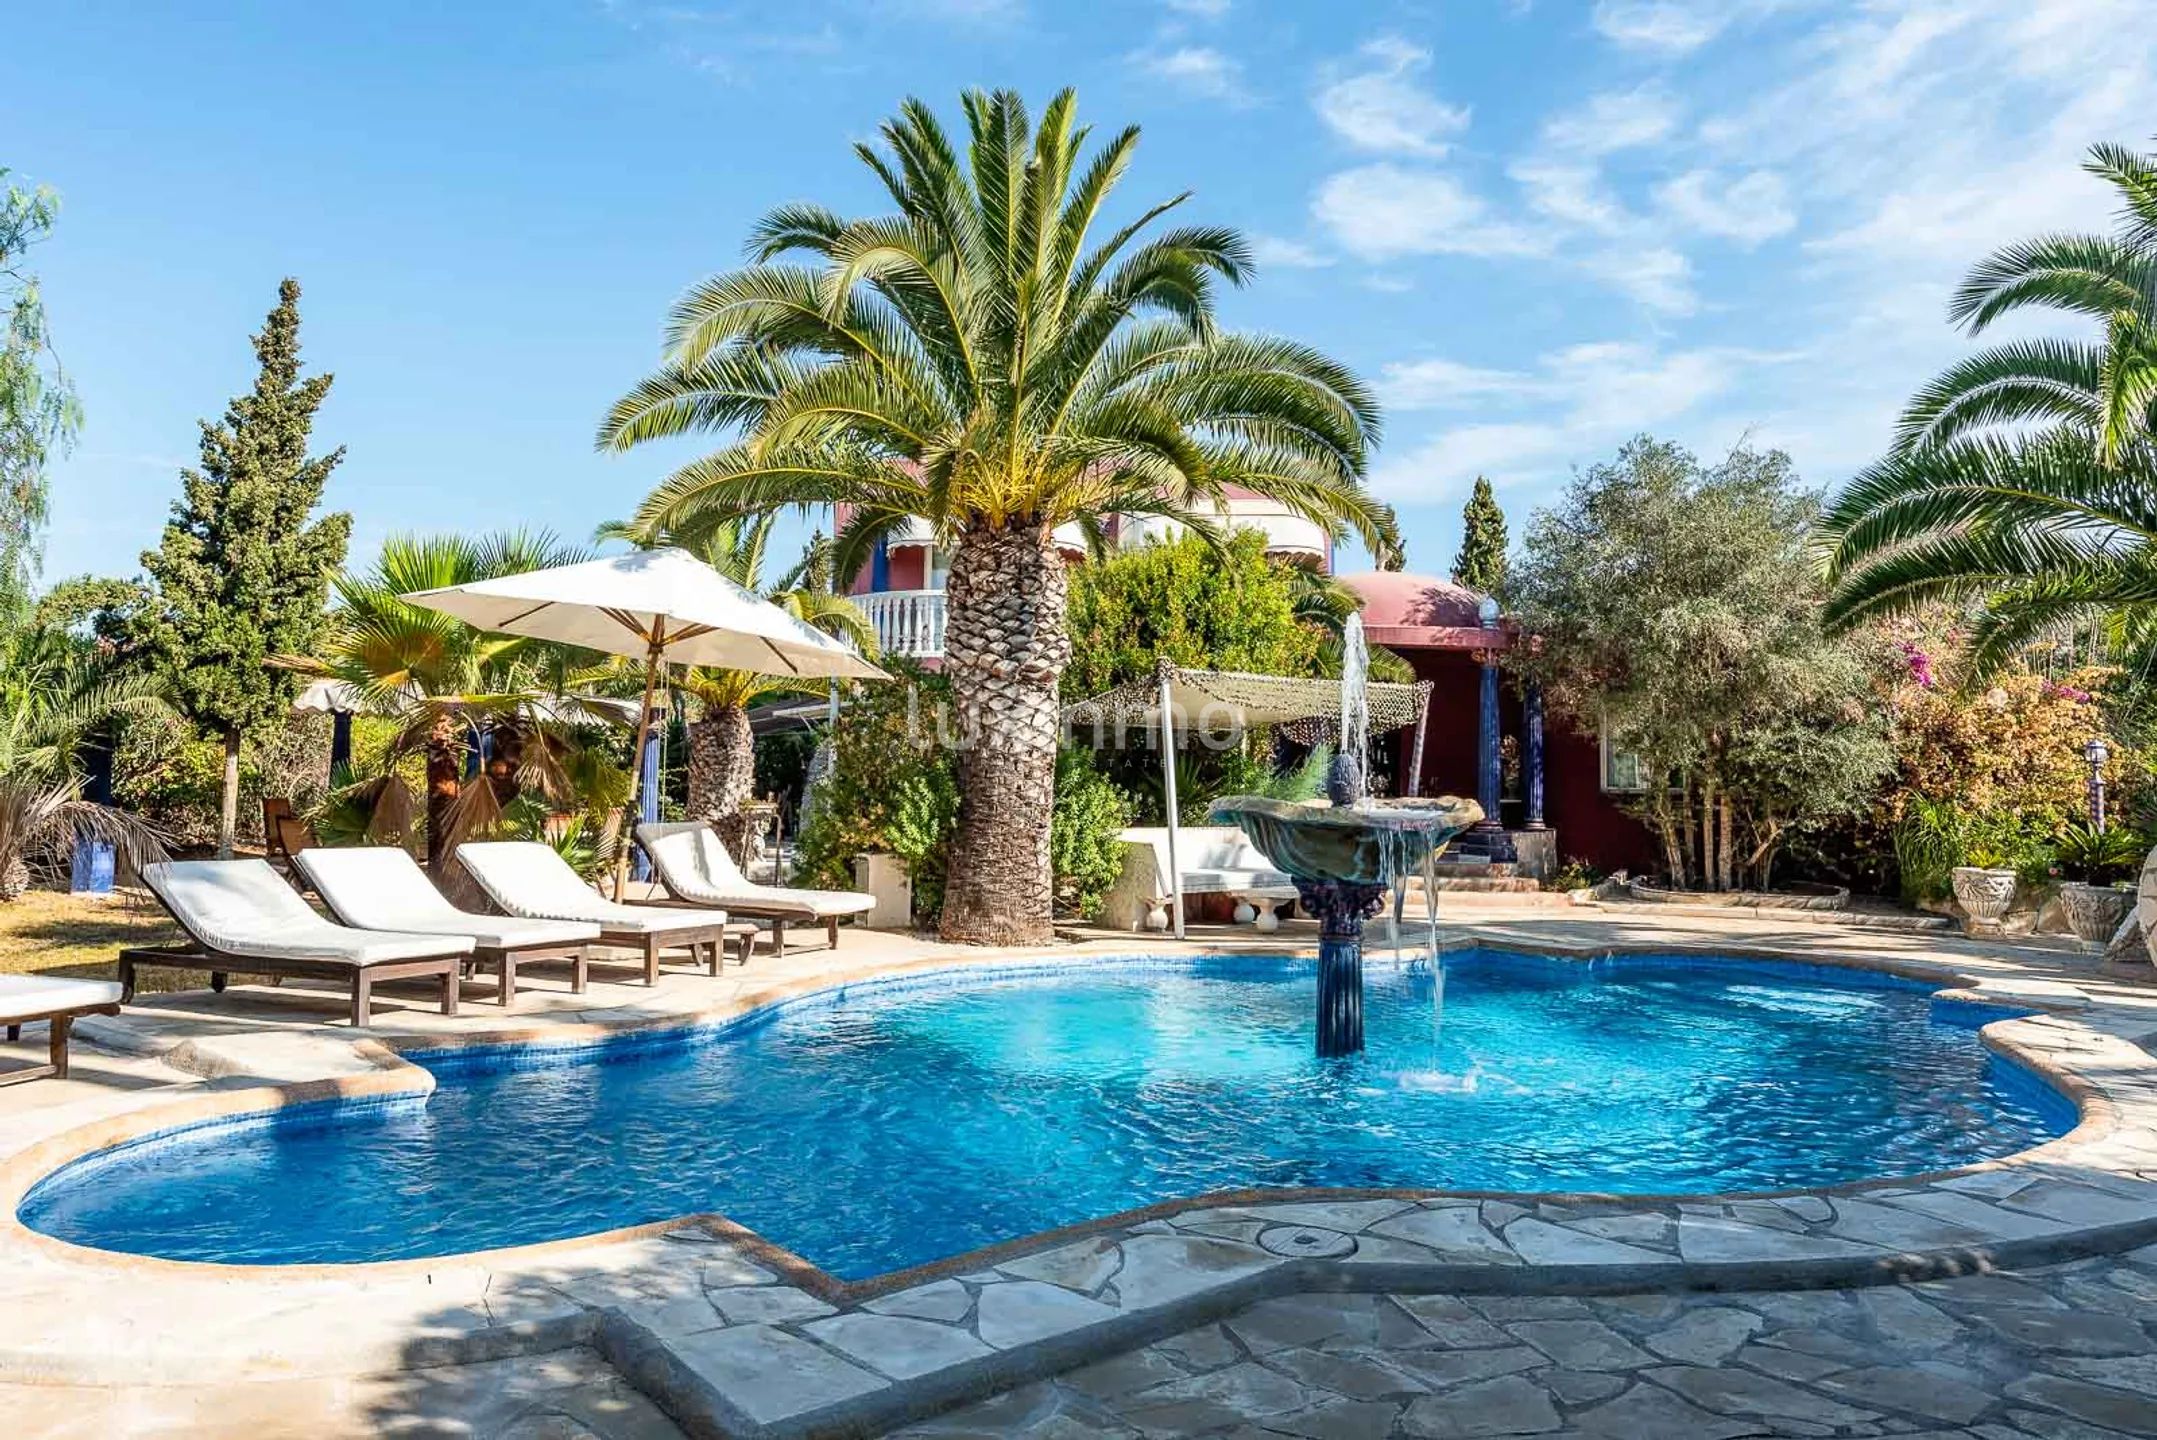 Villa Aladin: Autentyczna willa w arabskim stylu z tropikalnym ogrodem w Sant Jordi, Ibiza